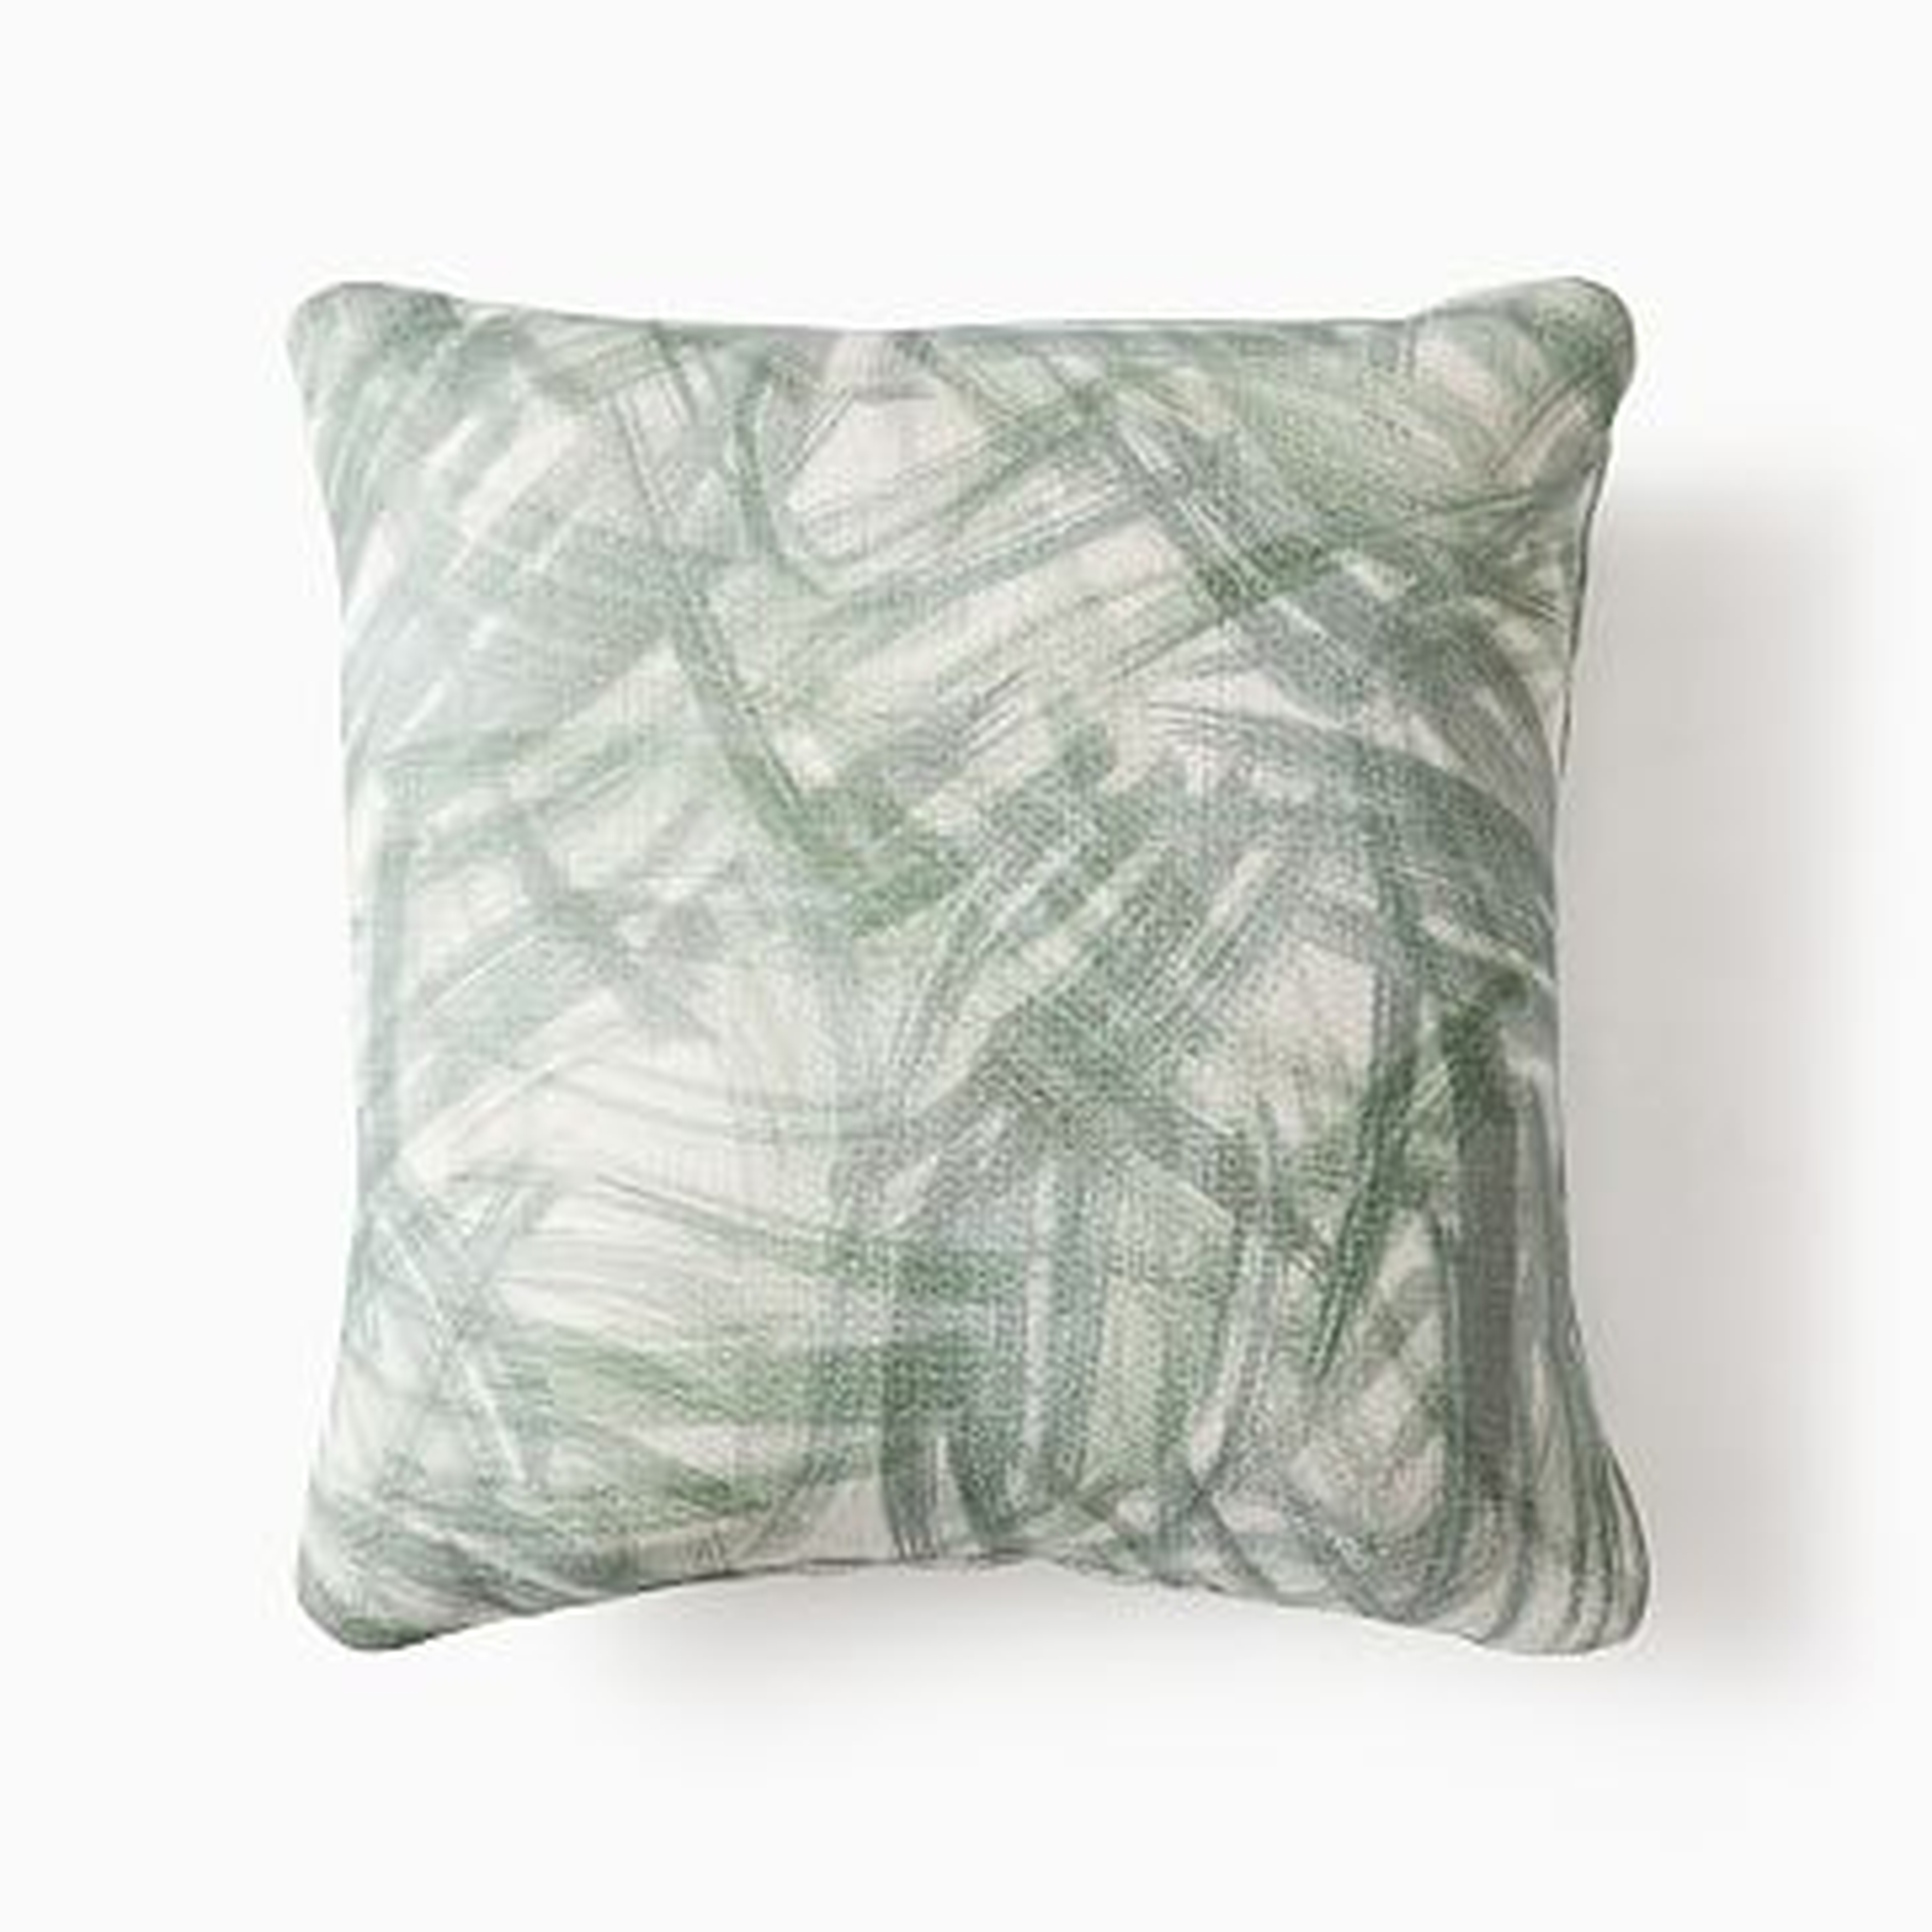 Outdoor Grass Pillow, 18"x18", Seedling - West Elm